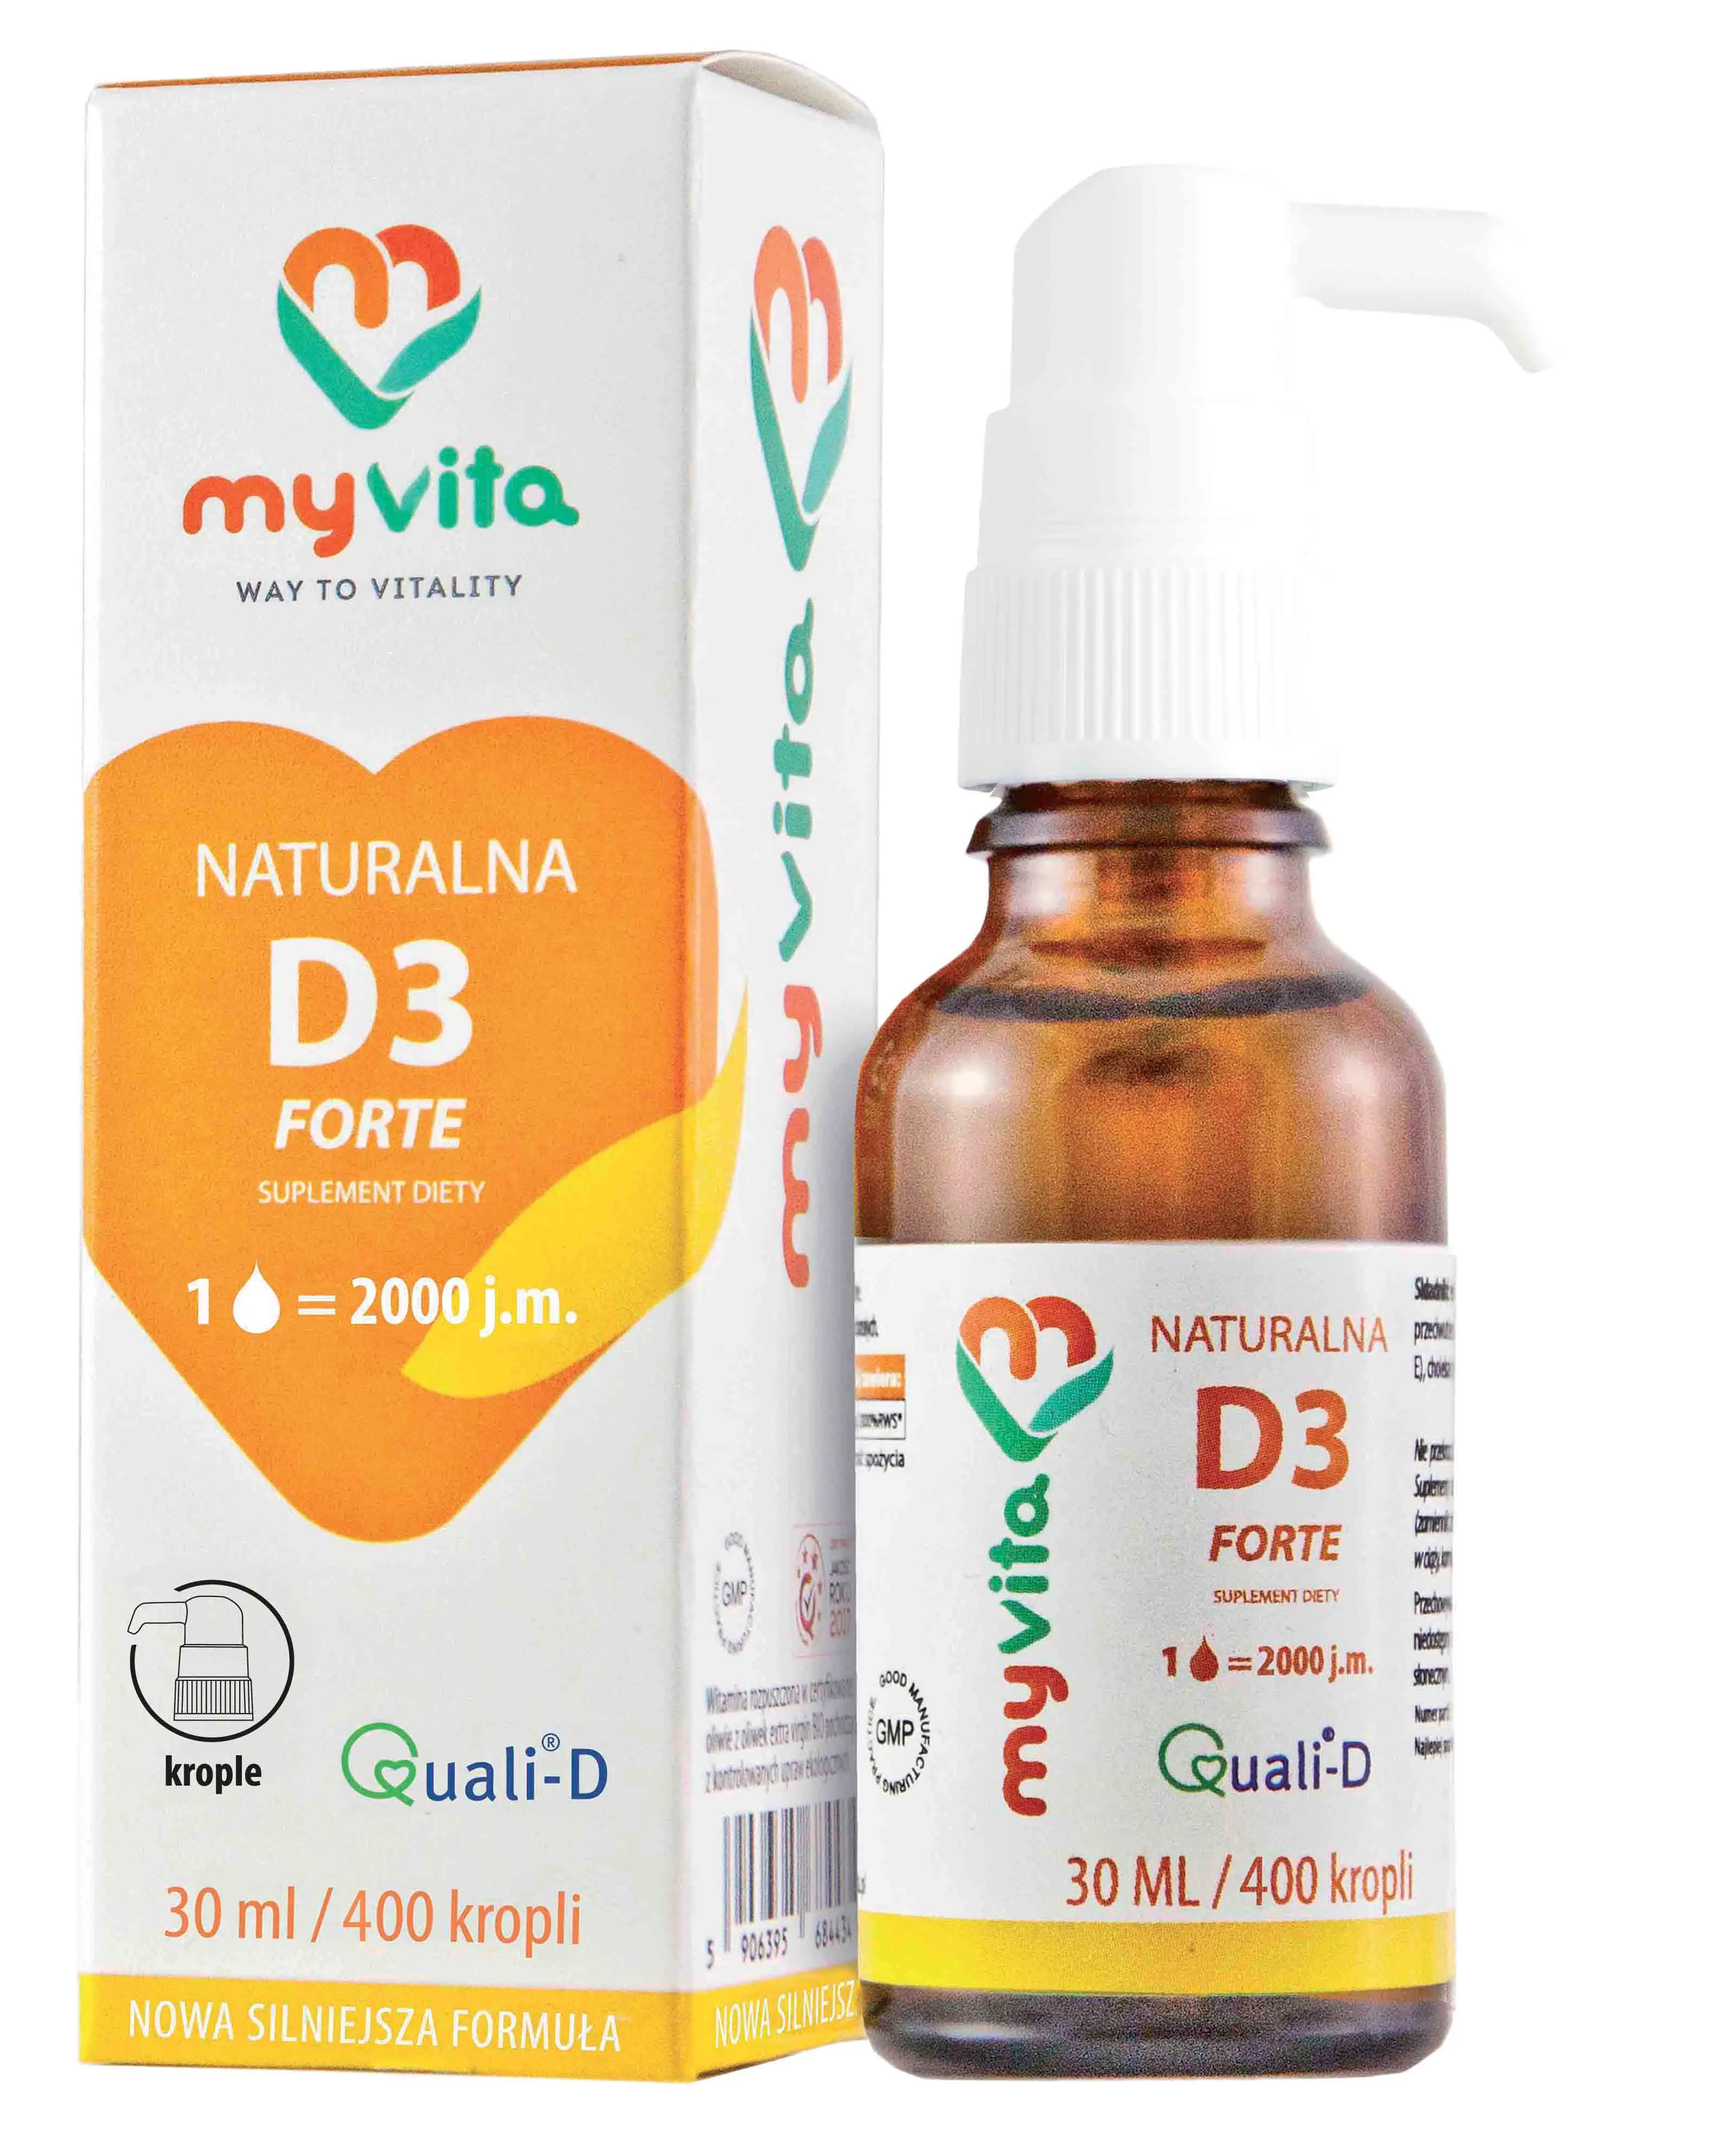 MyVita Silver, Witamina D3 Forte z lanoliny 2000IU, suplement diety, krople, 30ml